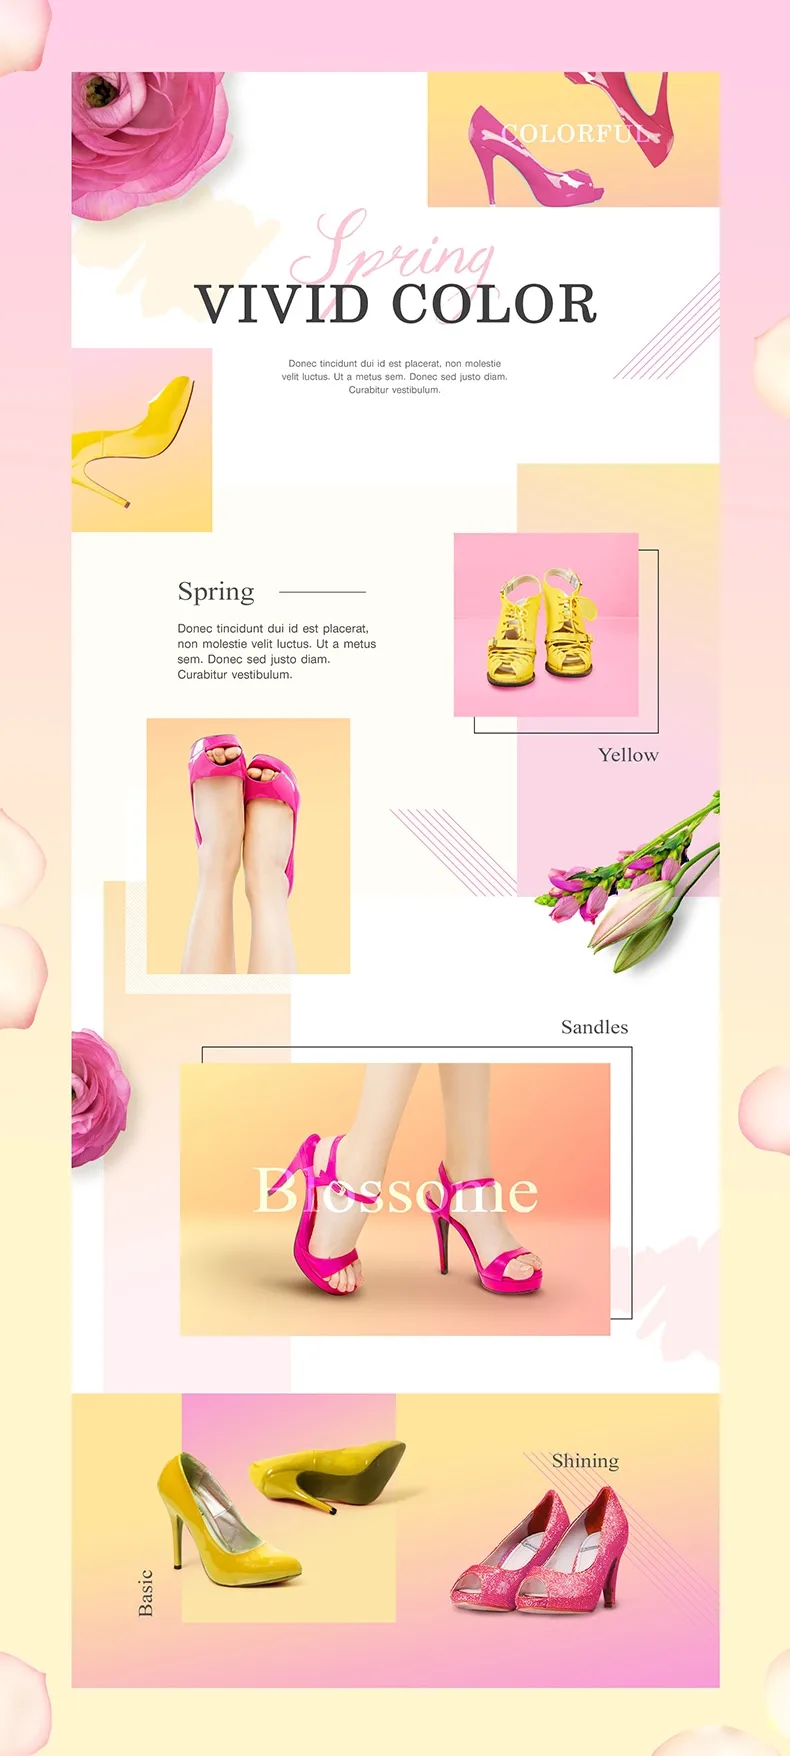 夏季时尚女装服饰鞋包专题电商活动详情页网页PSD模板素材-专题页面、海报素材-到位啦UI